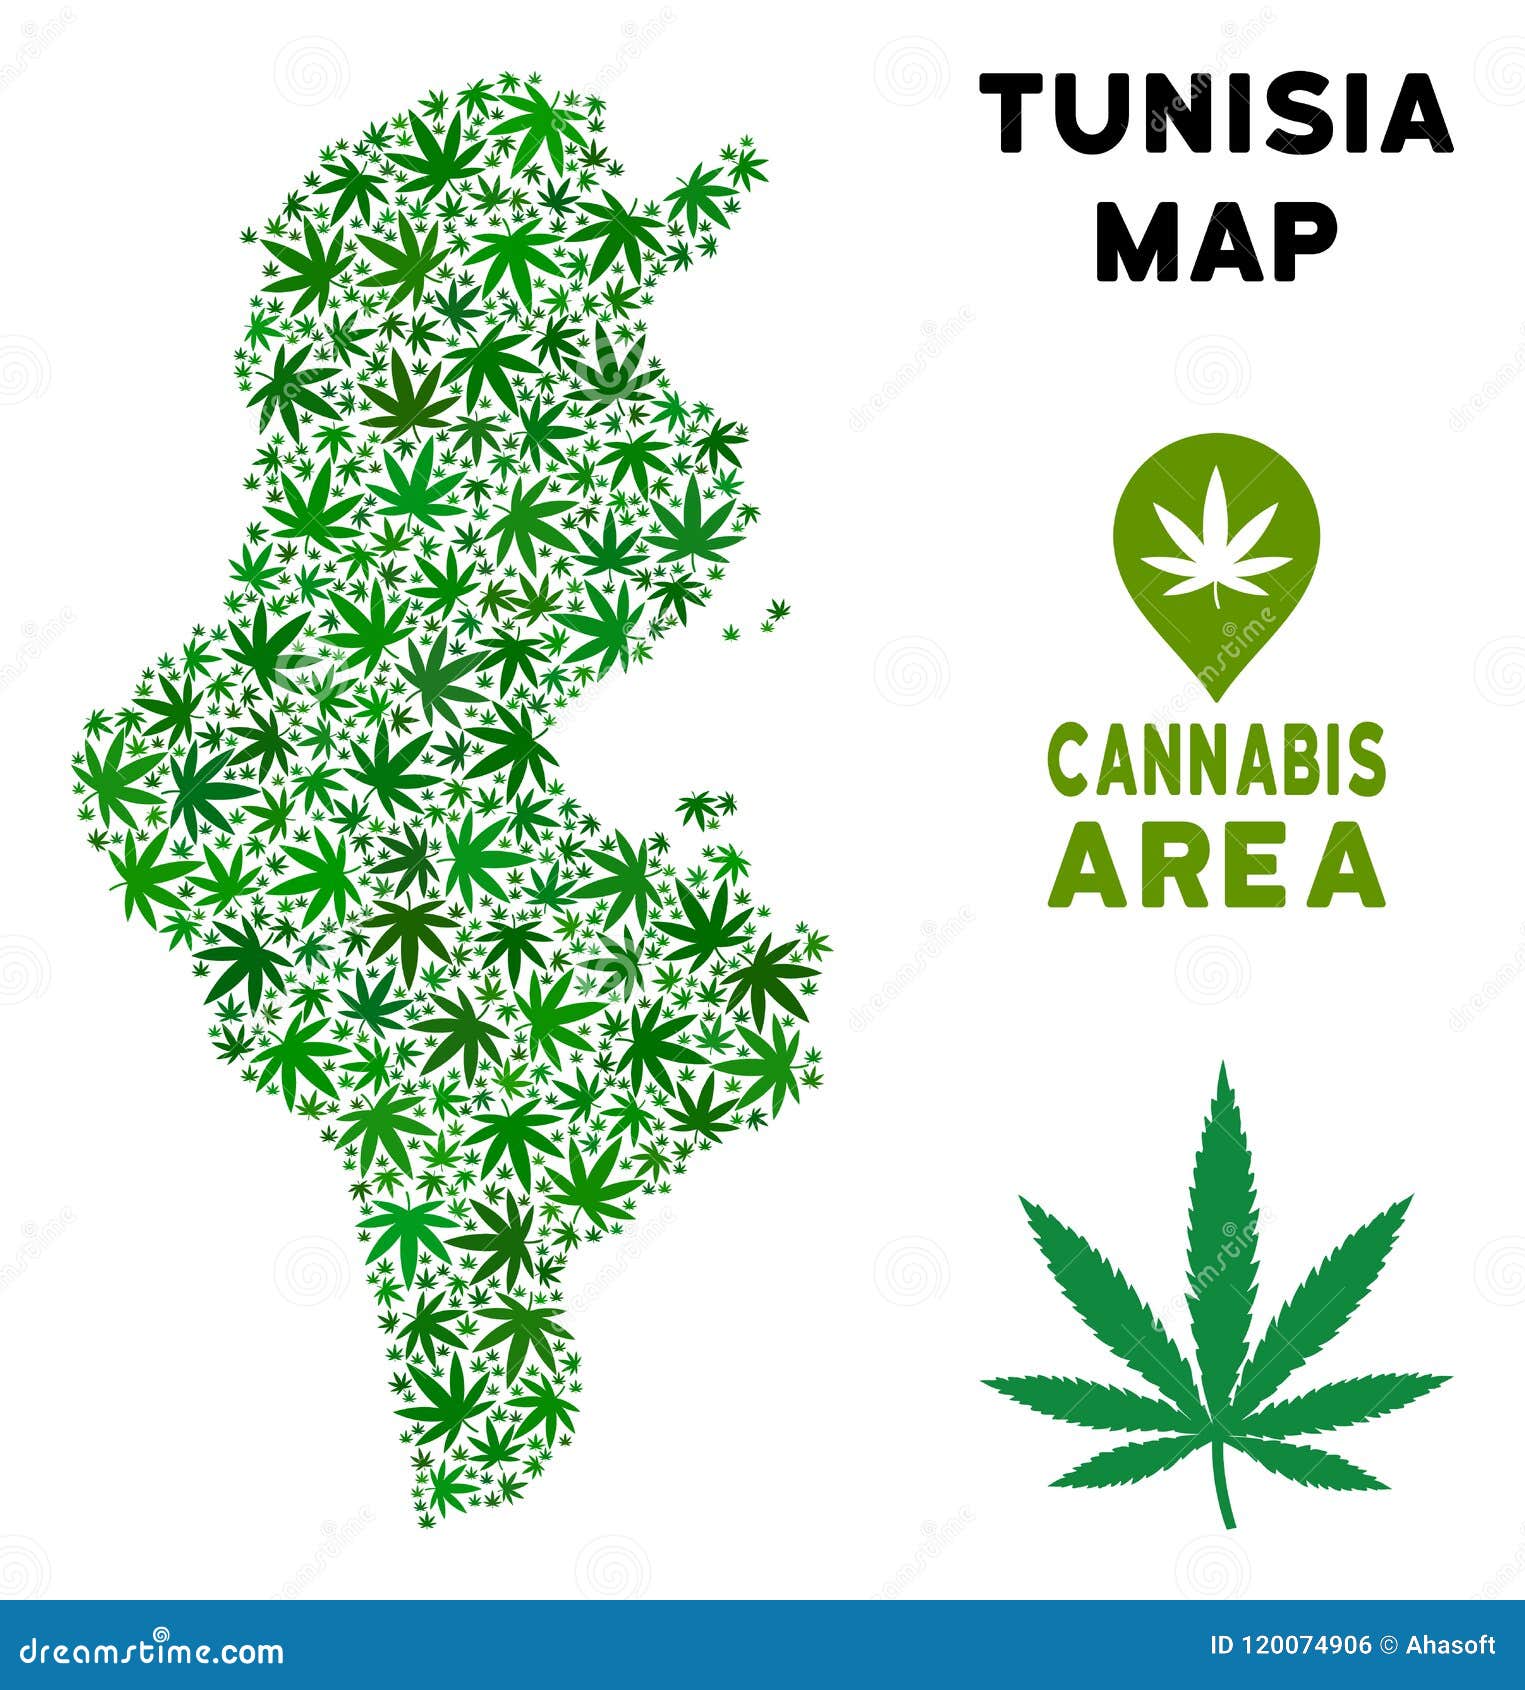 Конопля в тунисе мания преследования от наркотиков